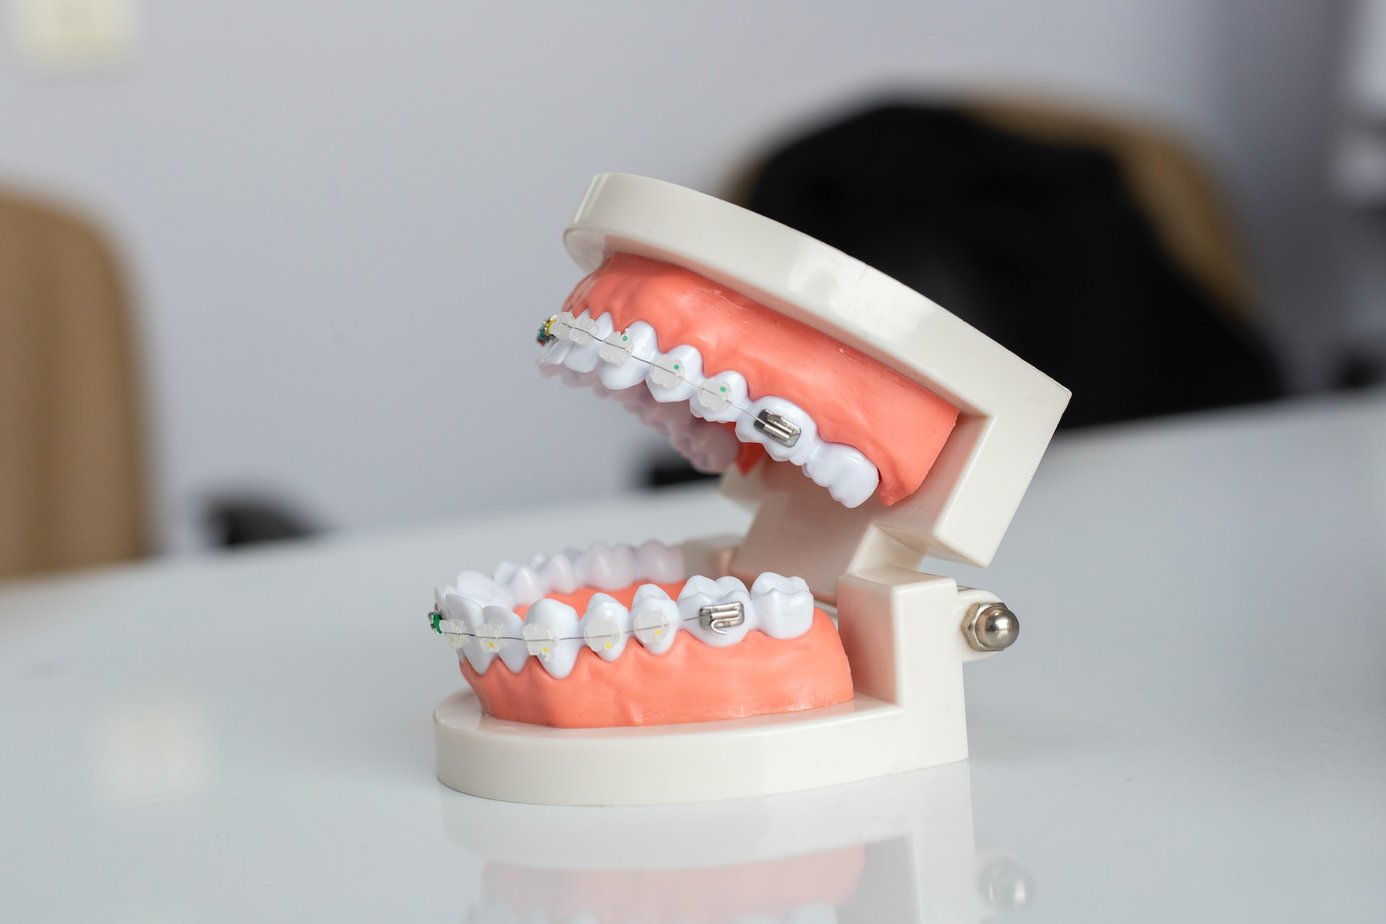 Wady zgryzu, które wymagają leczenia ortodontycznego